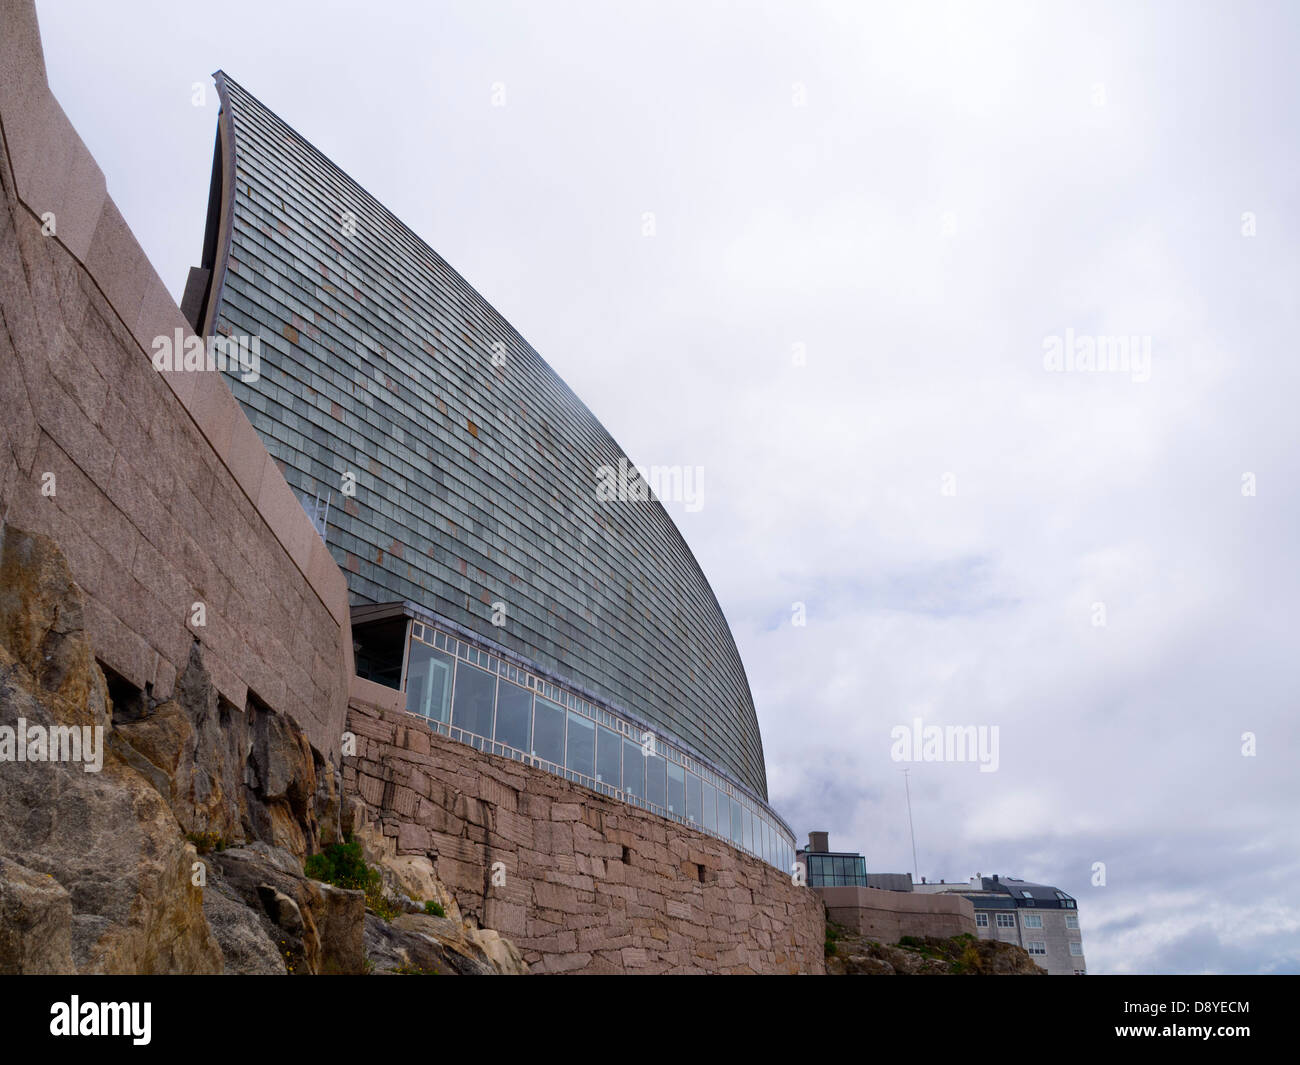 Domus, Casa del Hombre (museum of mankind), by japanese architect Arata Isozaki in La Coruna, Galicia, Spain Stock Photo